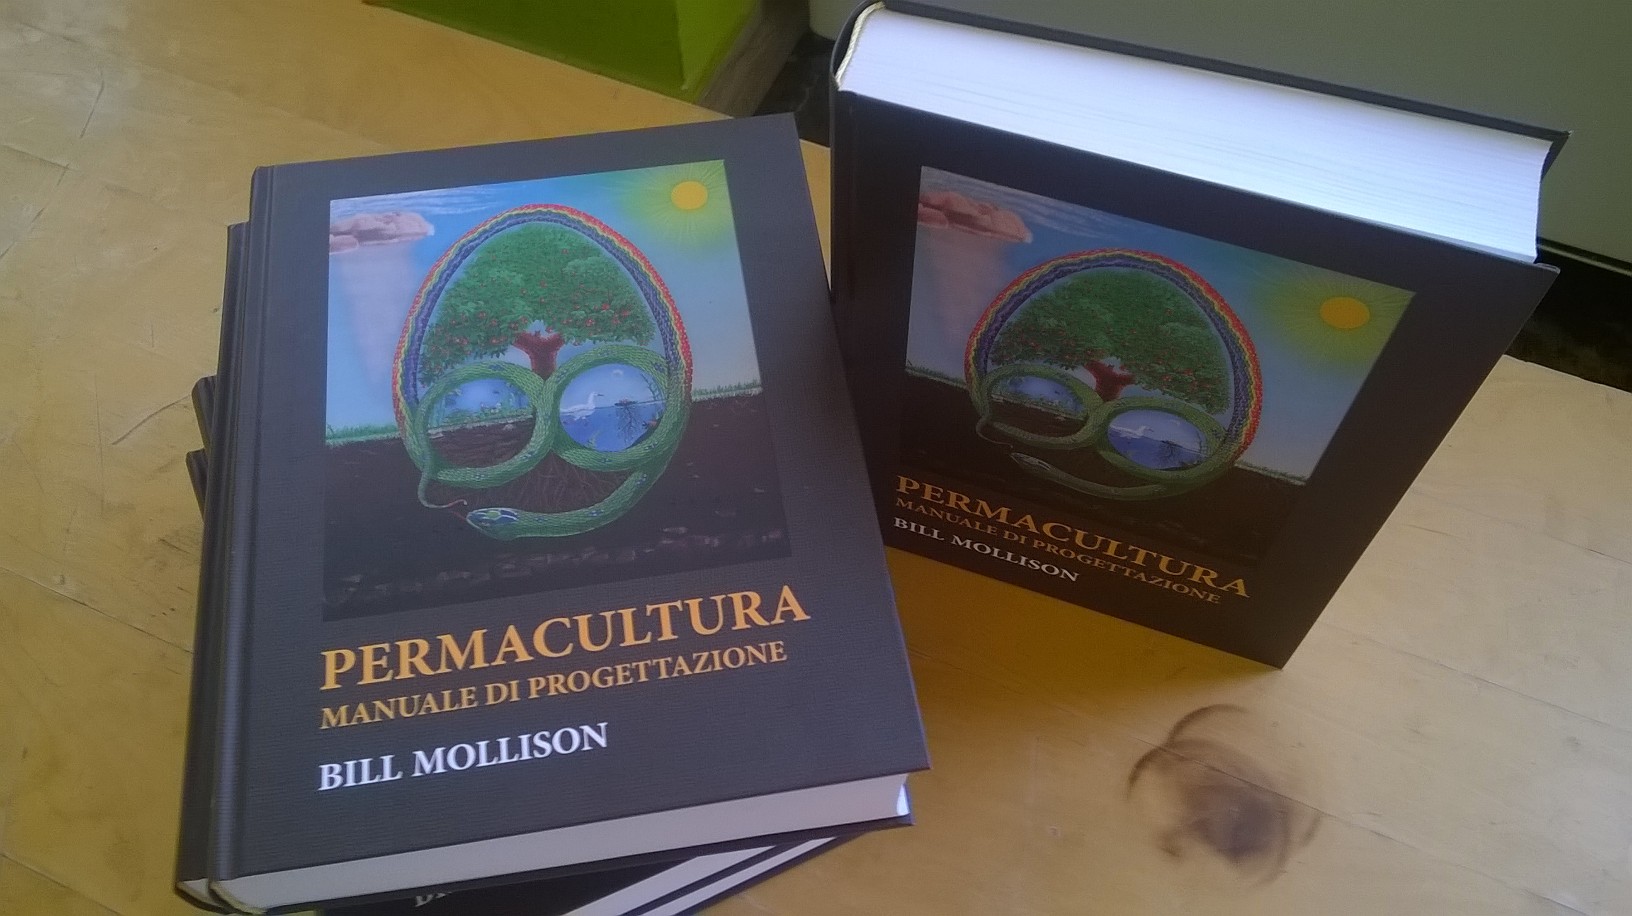 Manuale di permacultura in italiano